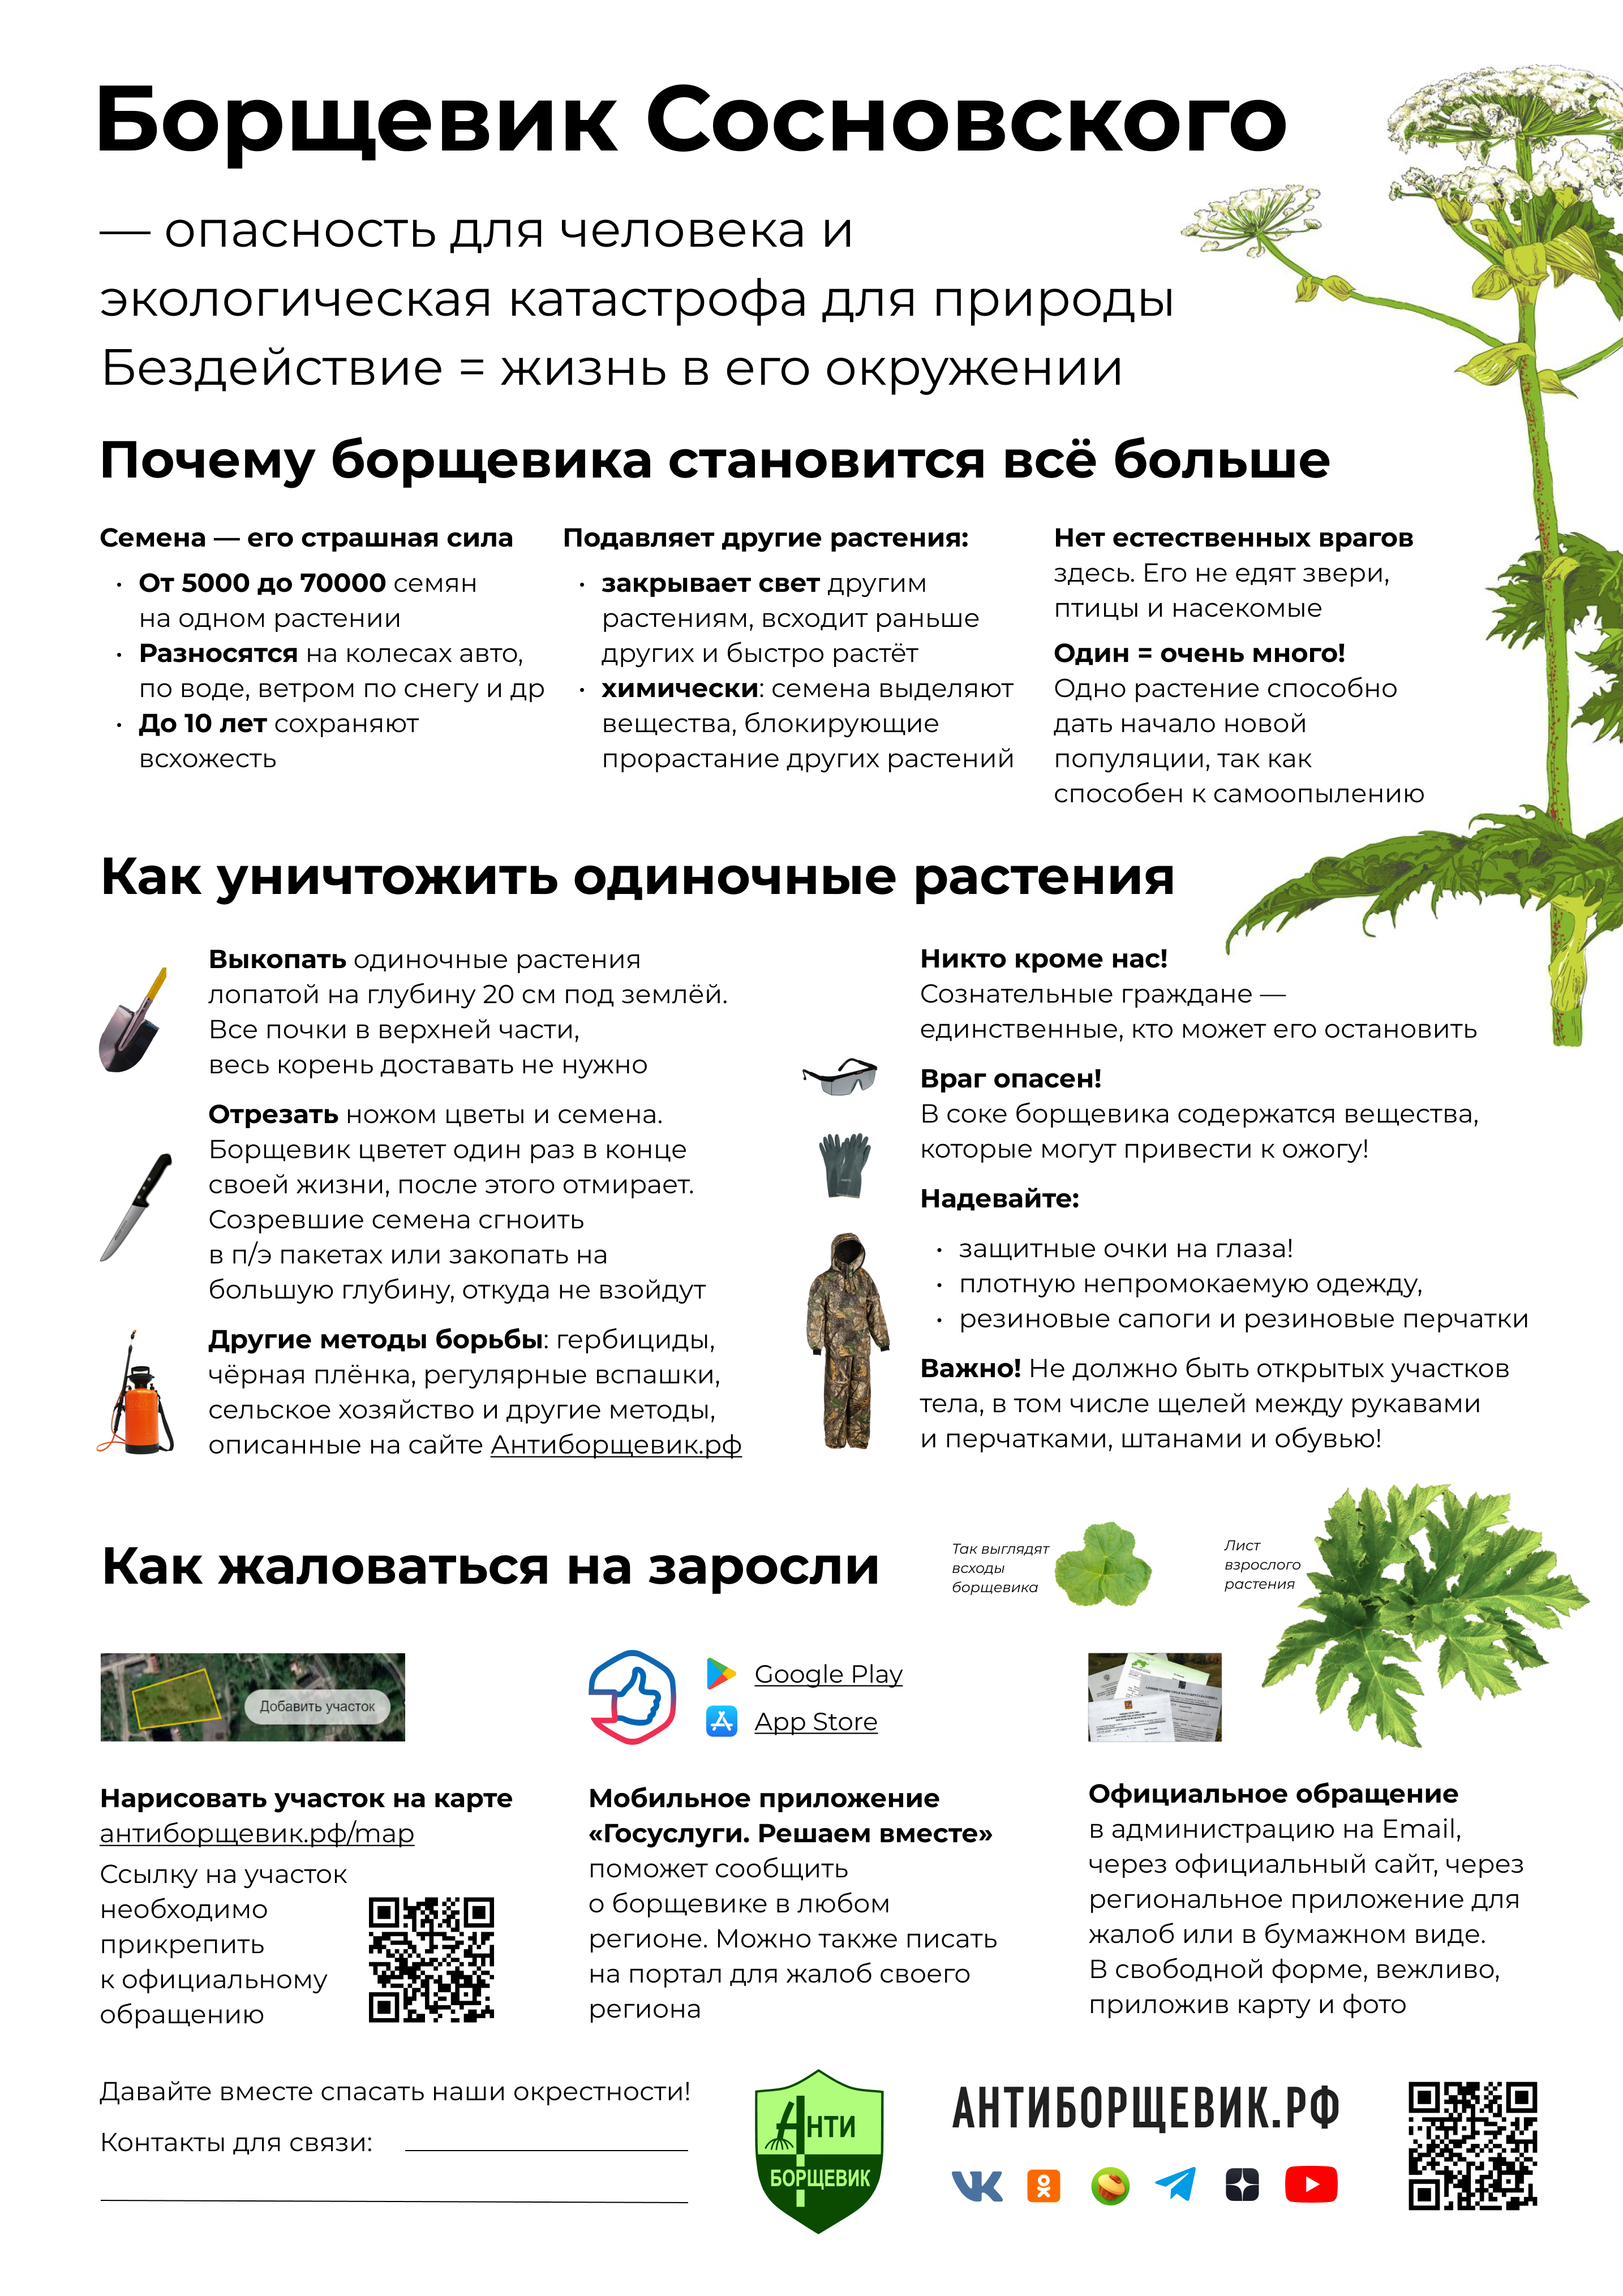 Листовка объявление - основная информация про борщевик Сосновского и контакты активиста для совместных субботников